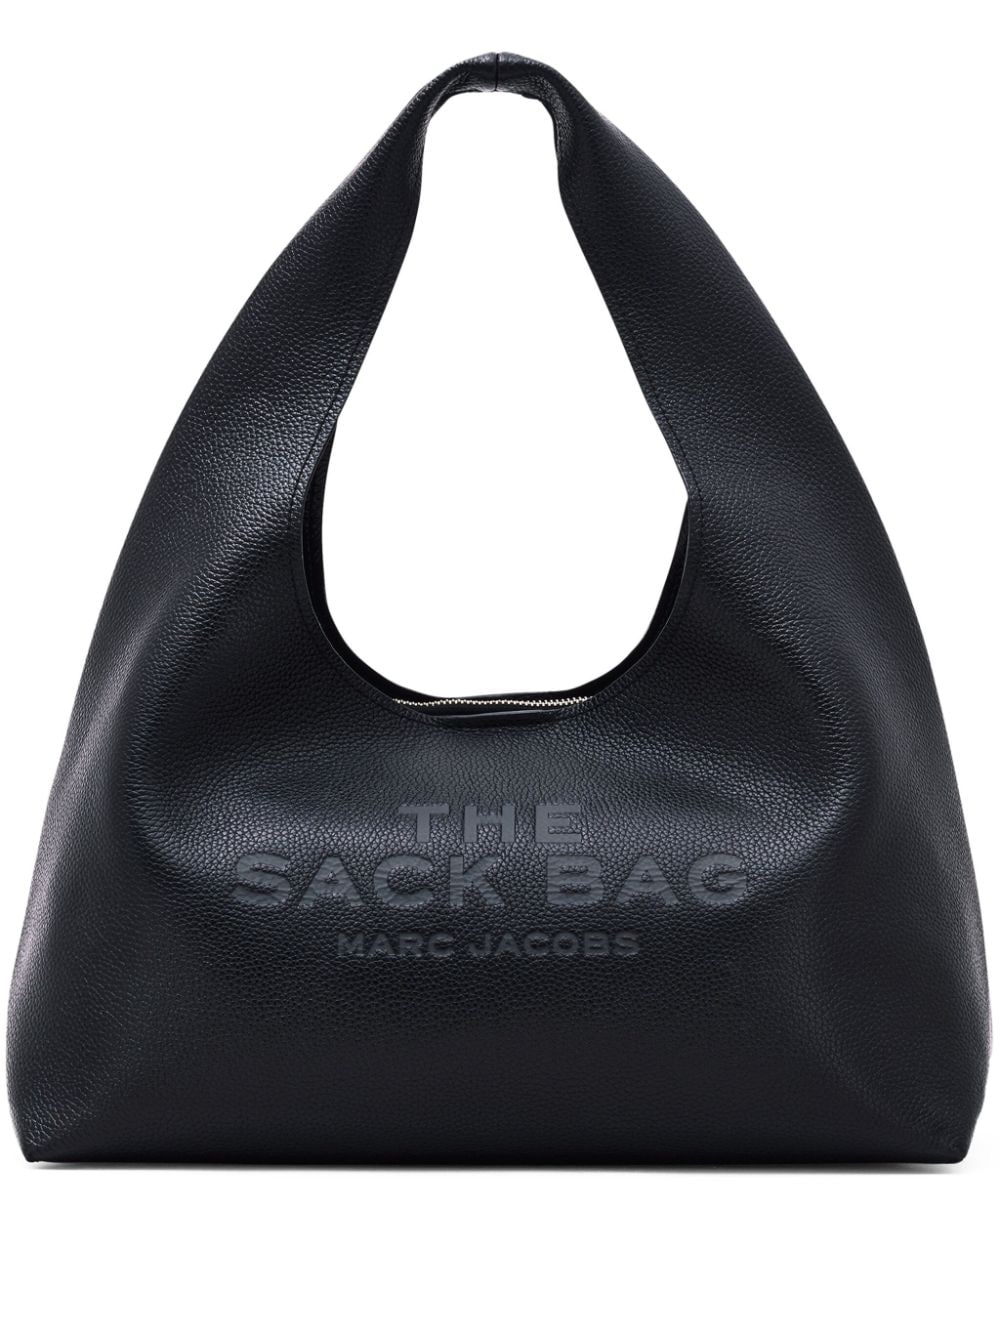 MARC JACOBS THE SACK Handbag